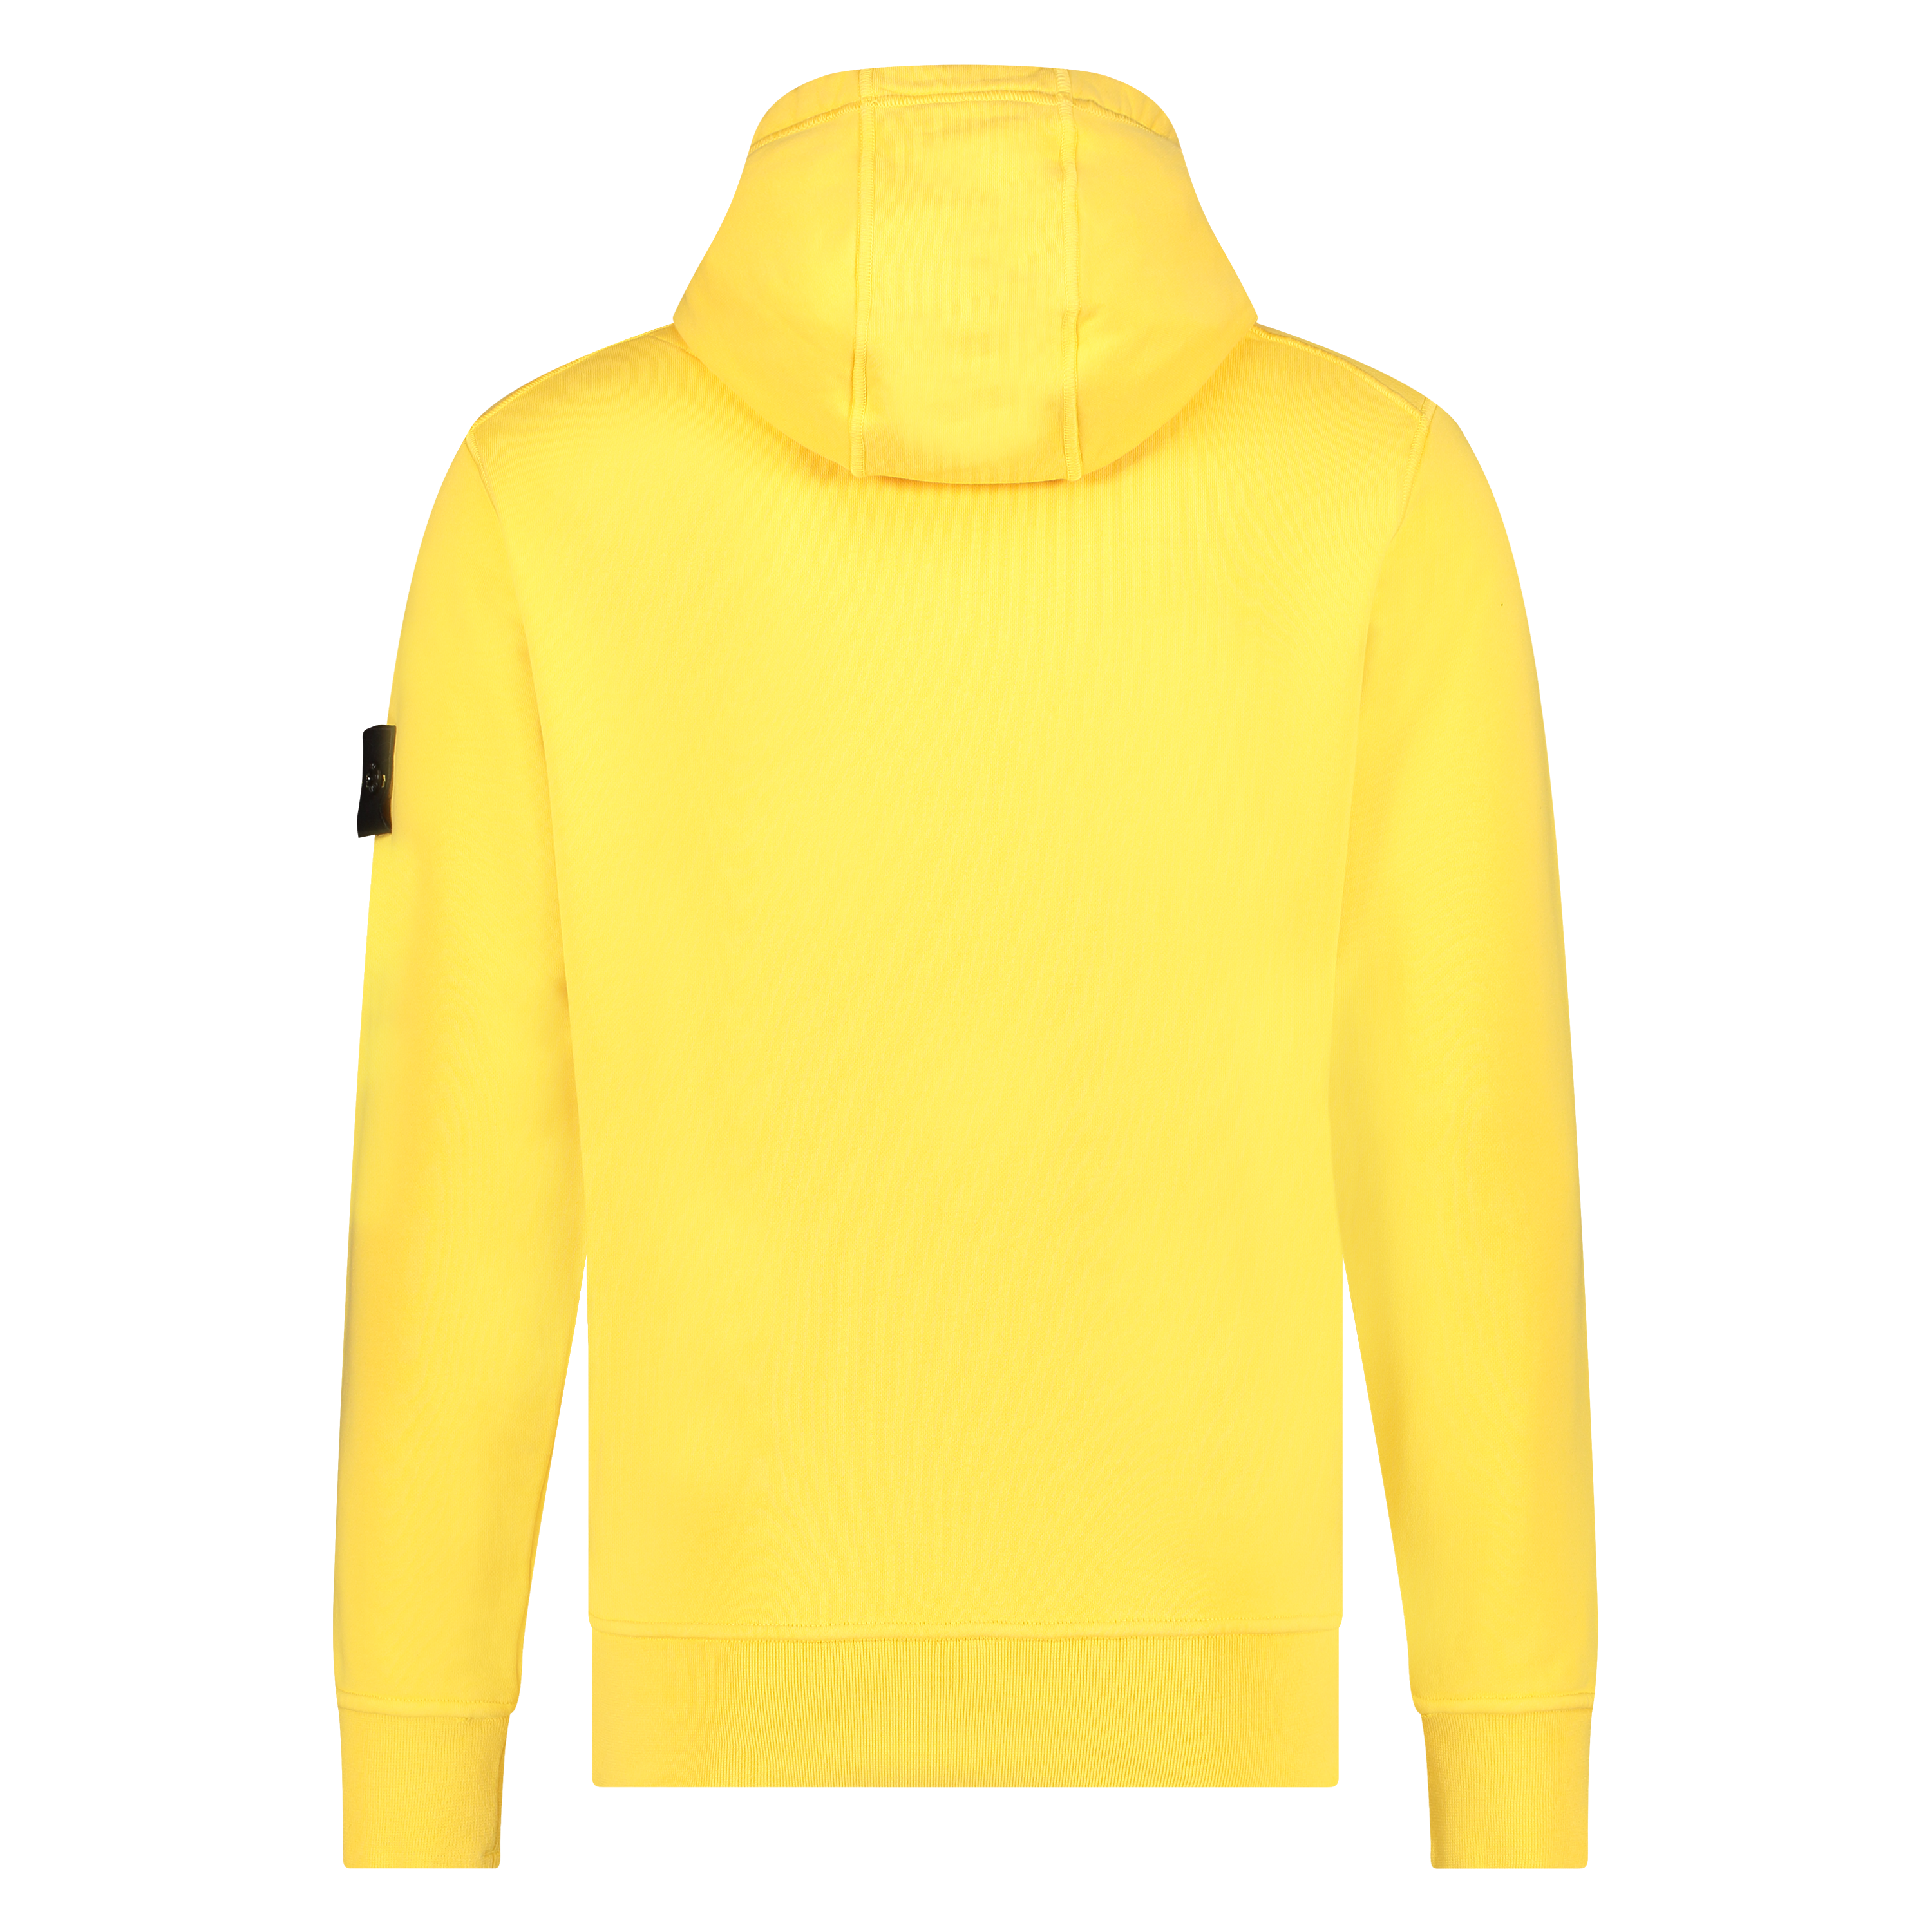 Van toepassing zijn land Vorige Stone Island heren hooded sweatshirt yellow